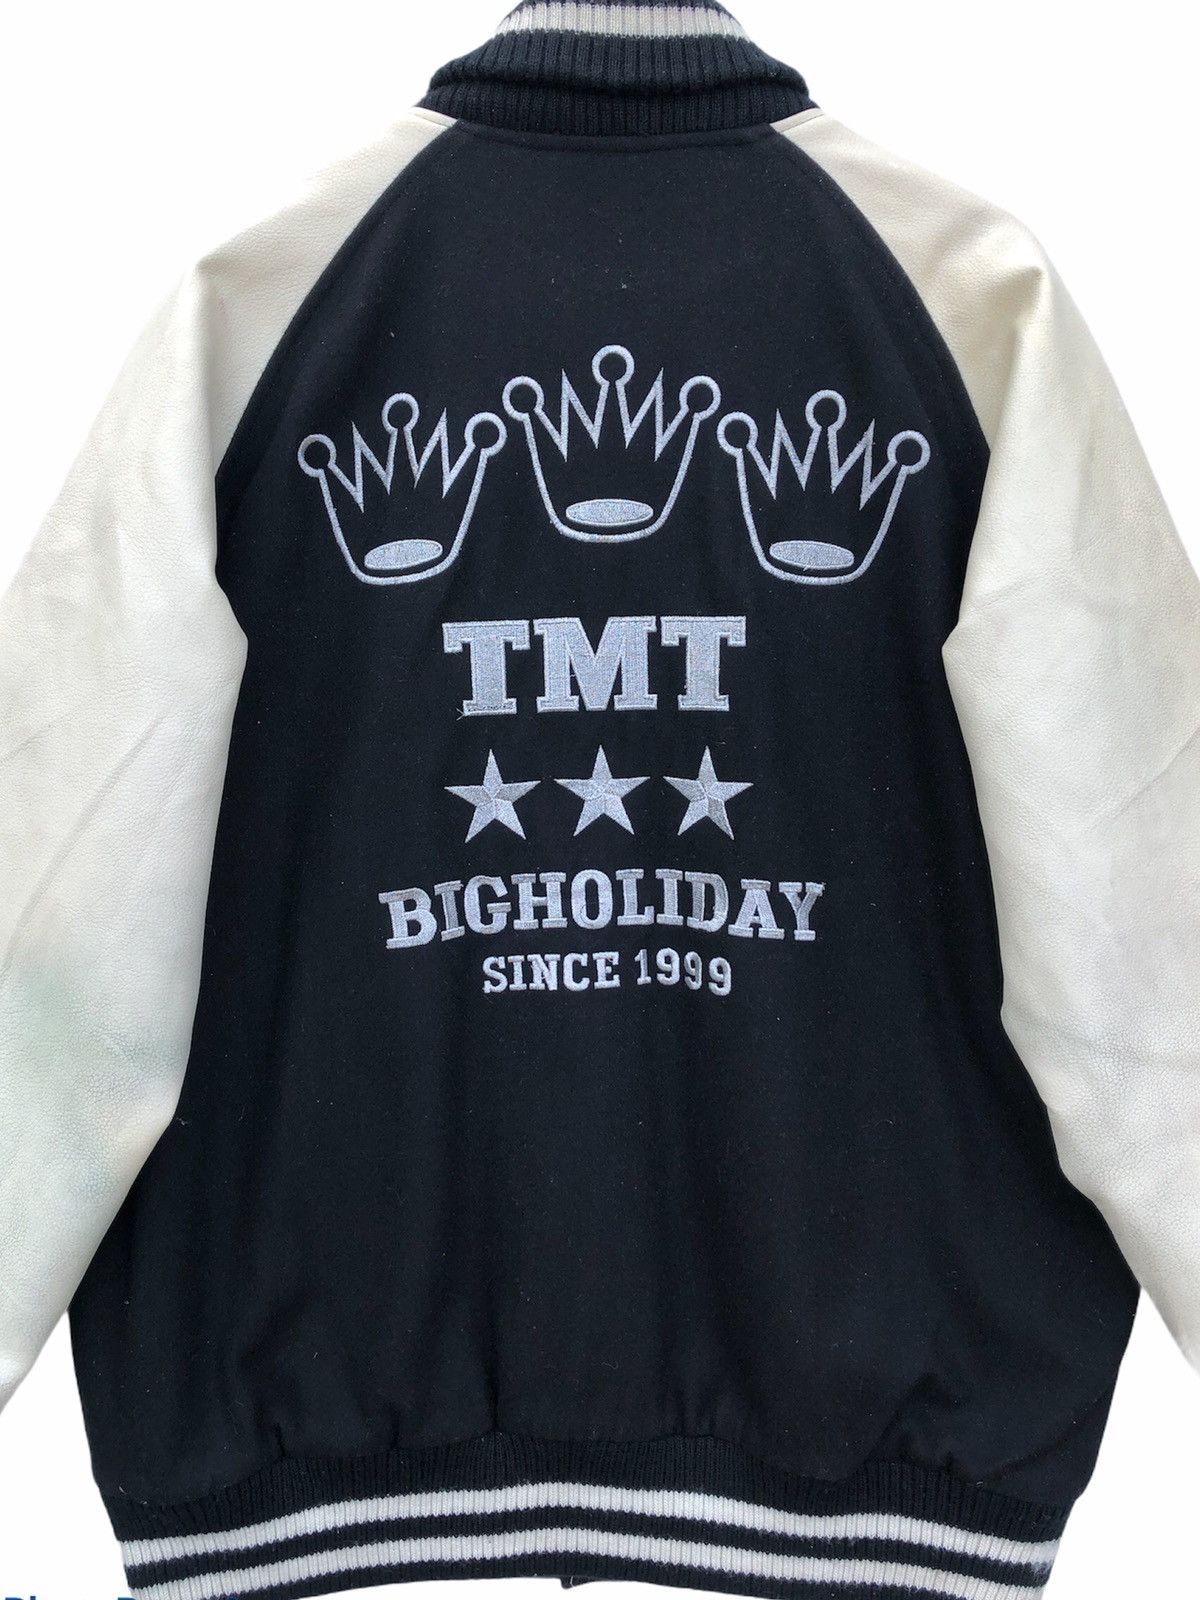 TMT BIG HOLIDAY ジャケット L - メンズファッション